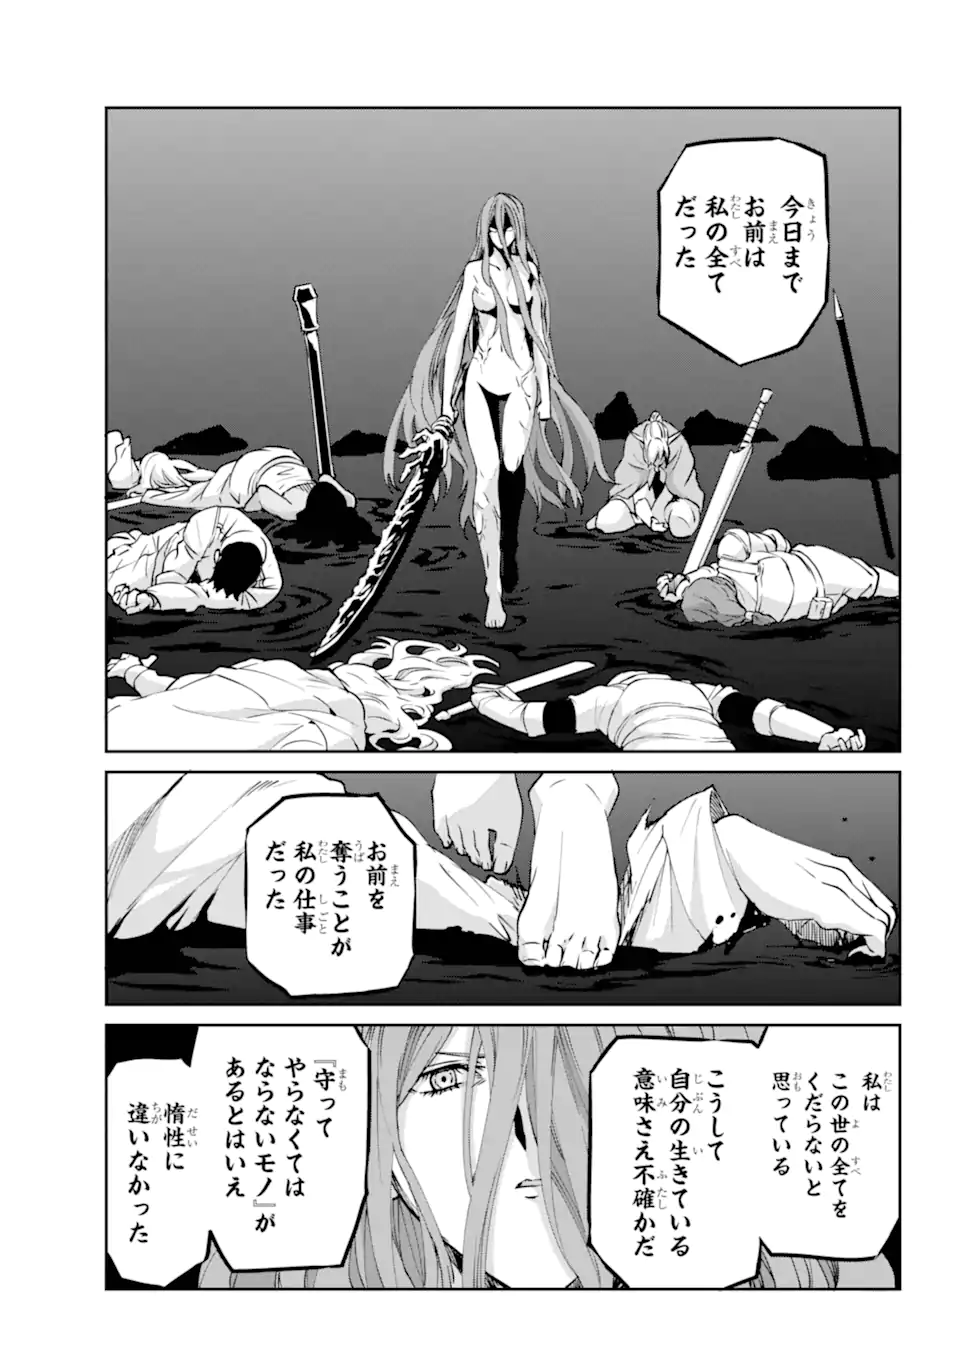 Dungeon ni Deai wo Motomeru no wa Machigatte Iru Darou ka Gaiden - Sword Oratoria - Chapter 120.3 - Page 3